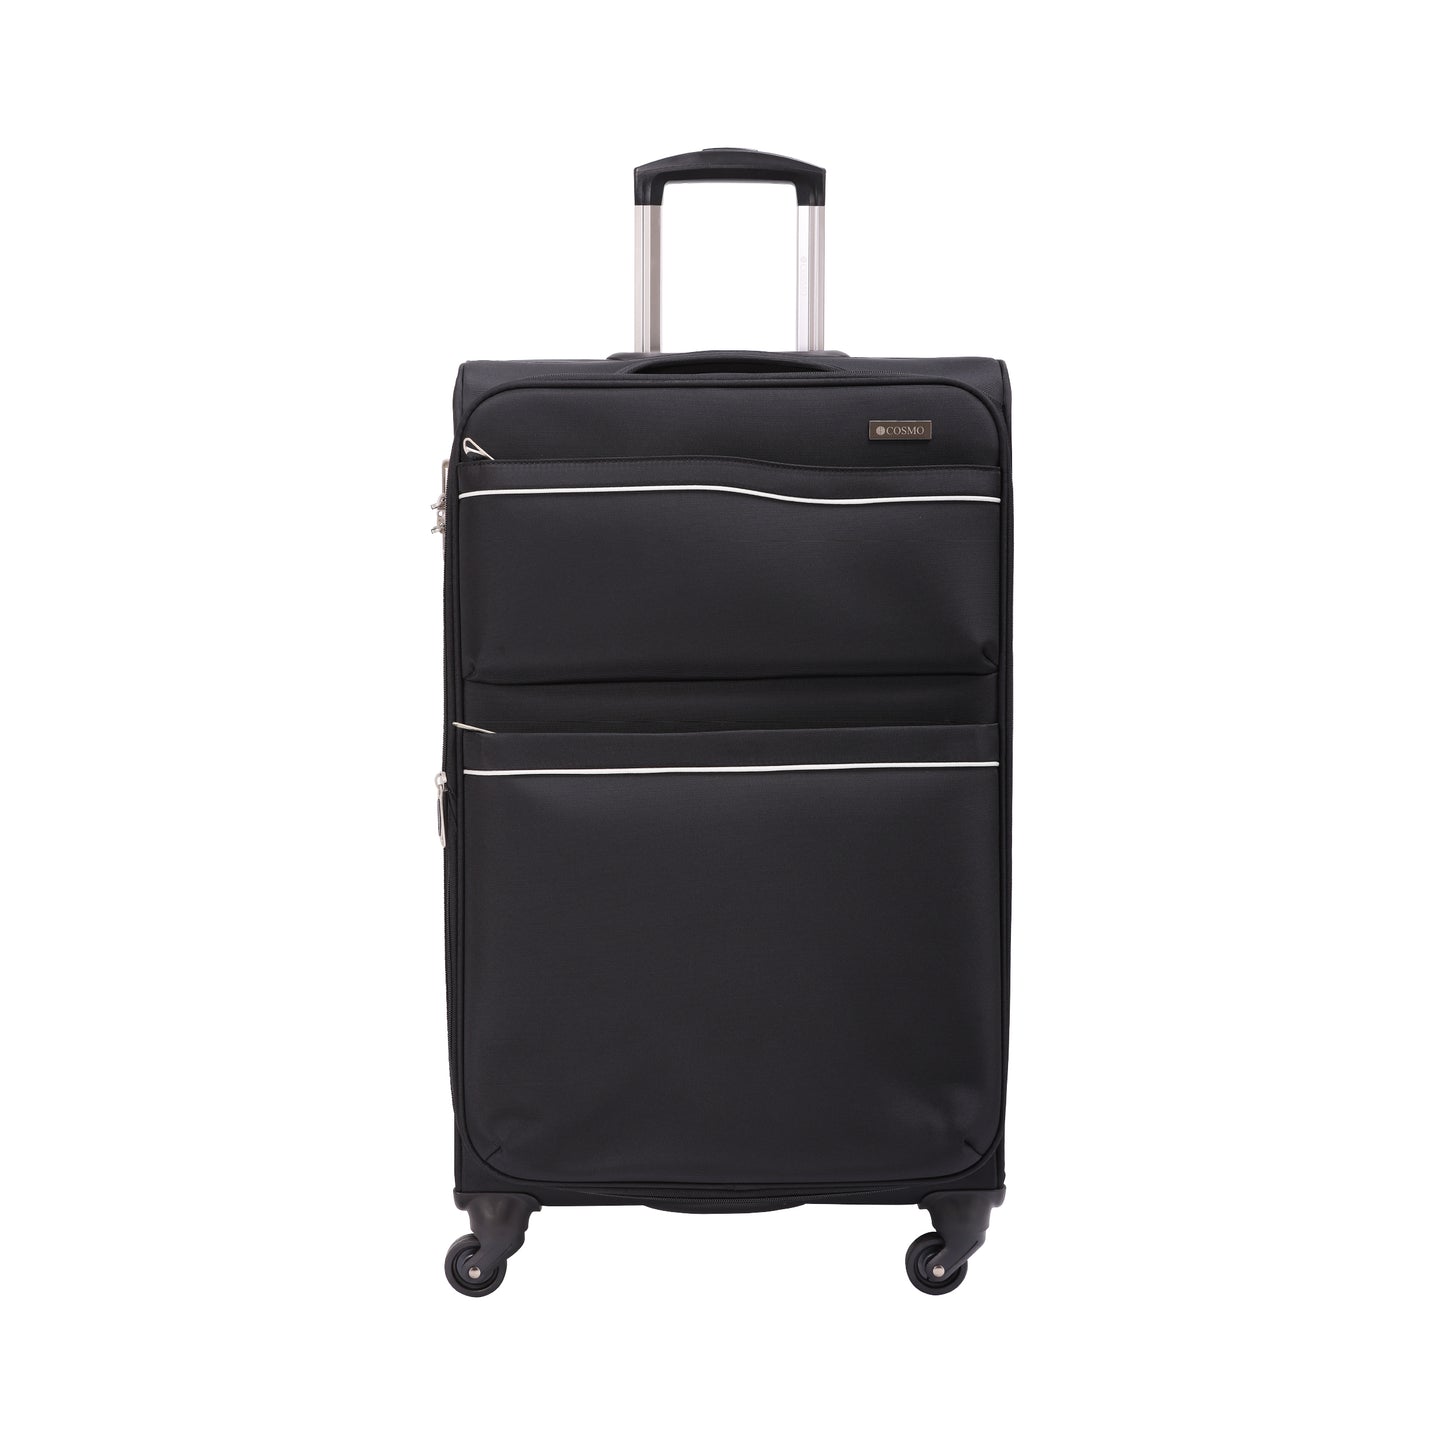 Cosmo Iridium 4W 75 cm Soft Luggage Trolley Case